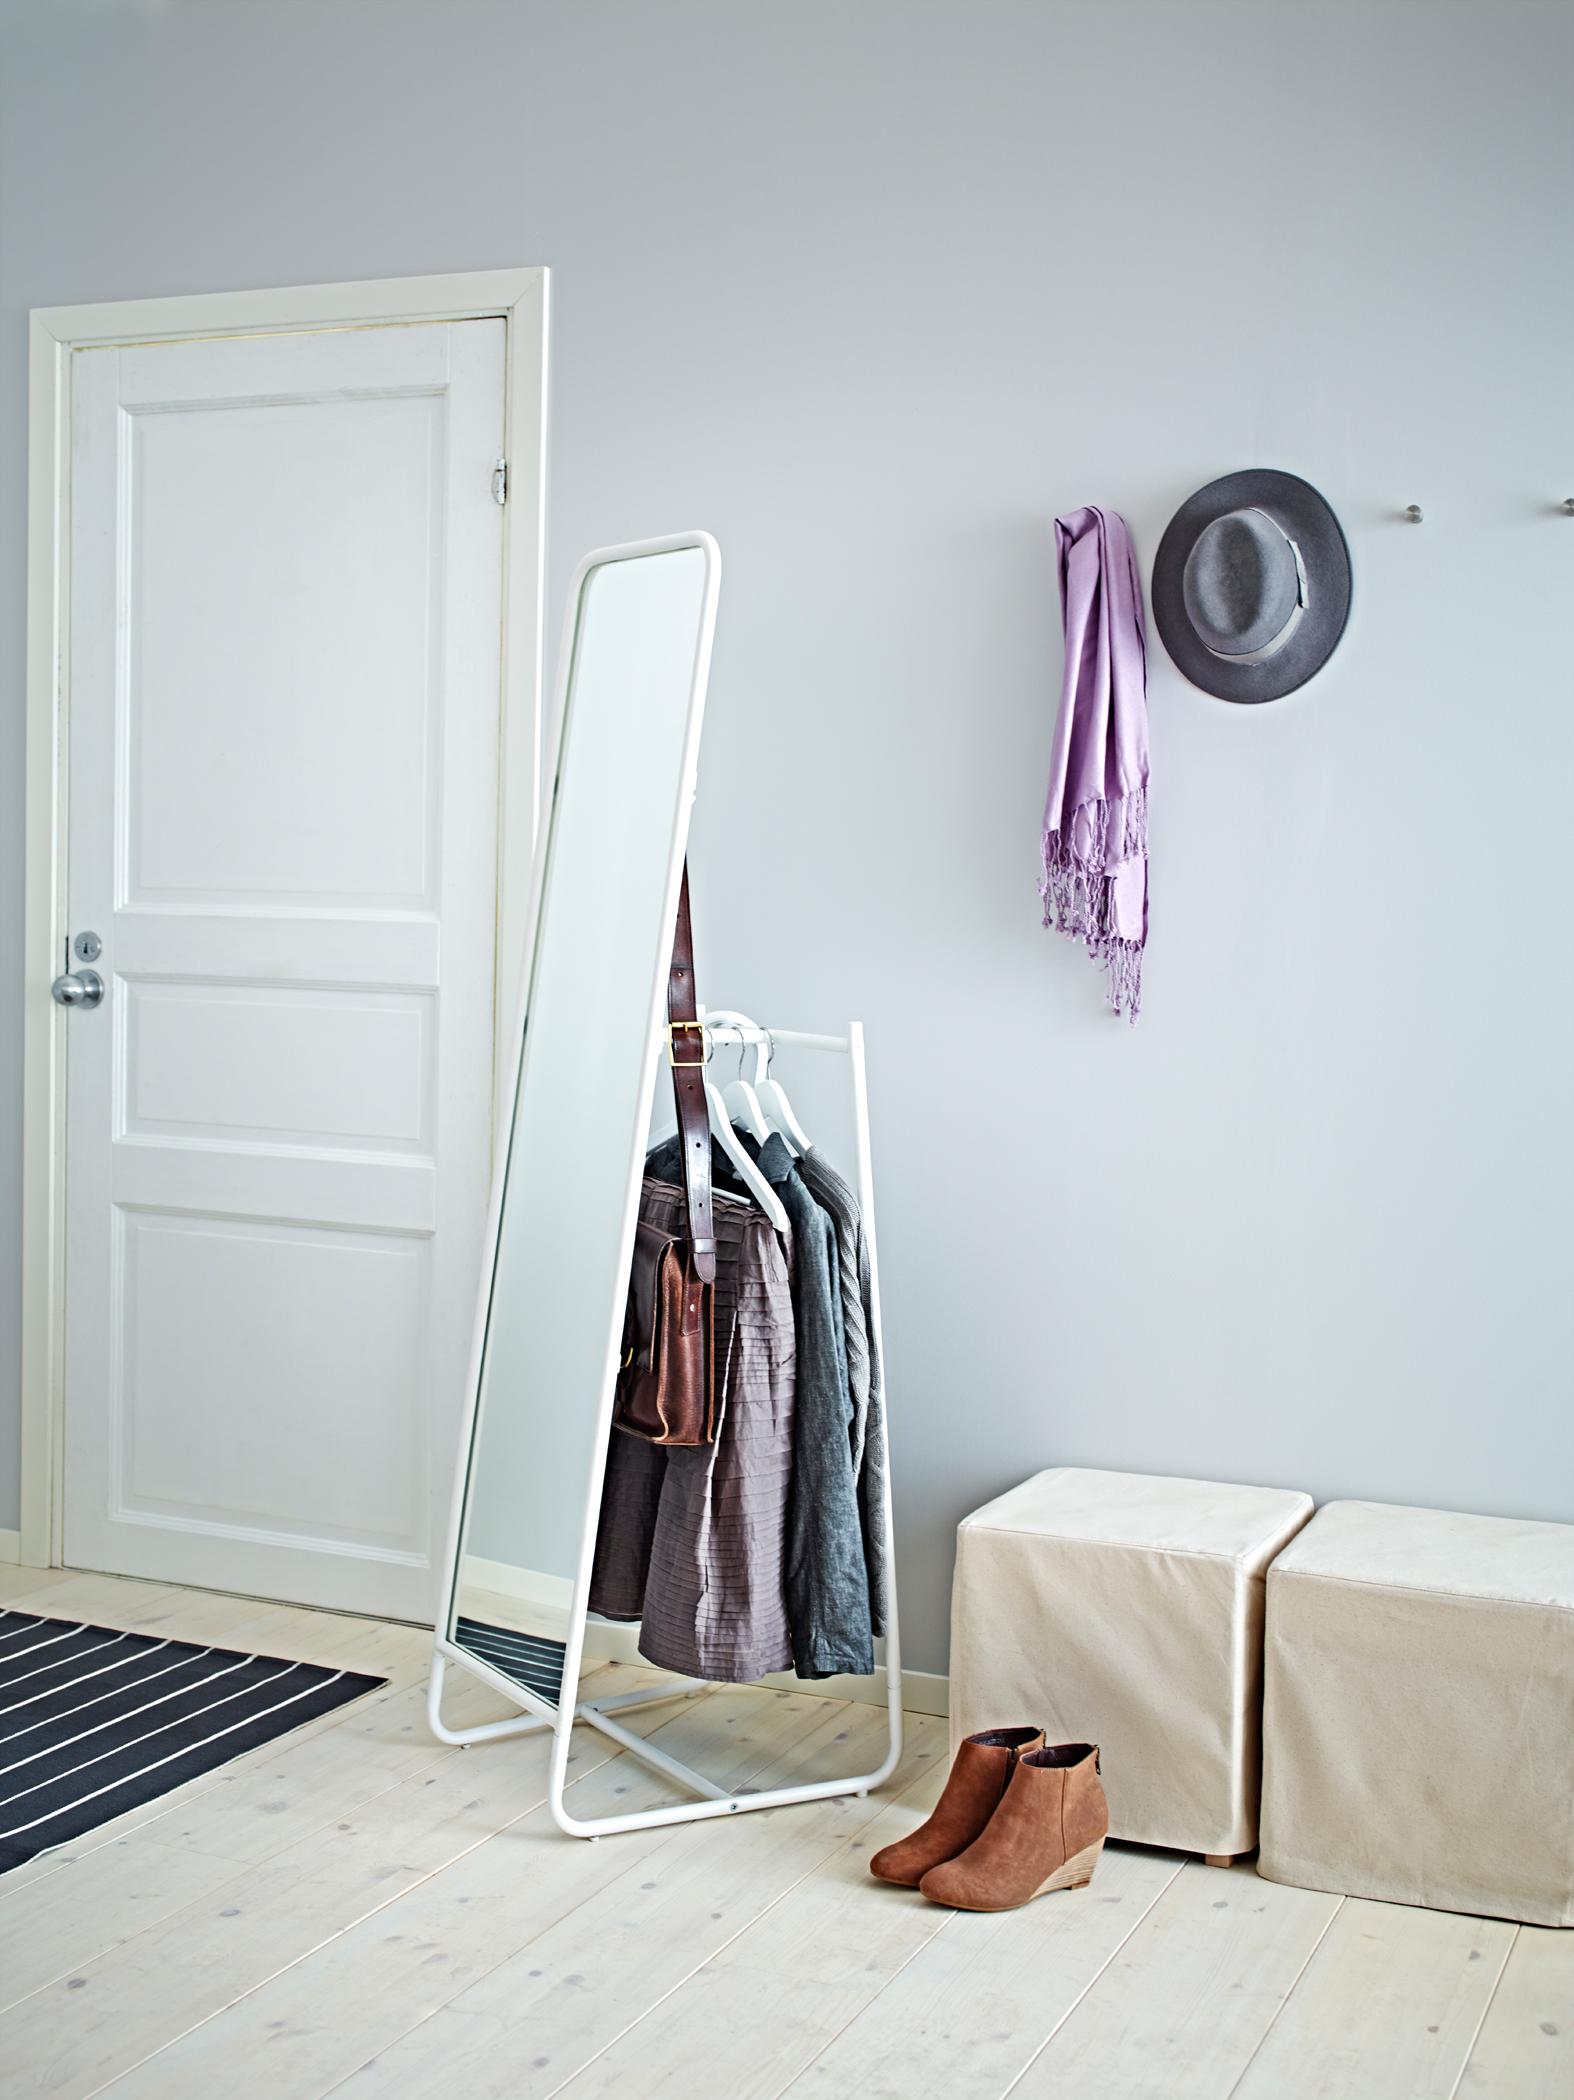 Spiegel-Garderoben-Kombination #kleiderständer #ikea #garderobe #standspiegel ©Inter IKEA Systems B.V